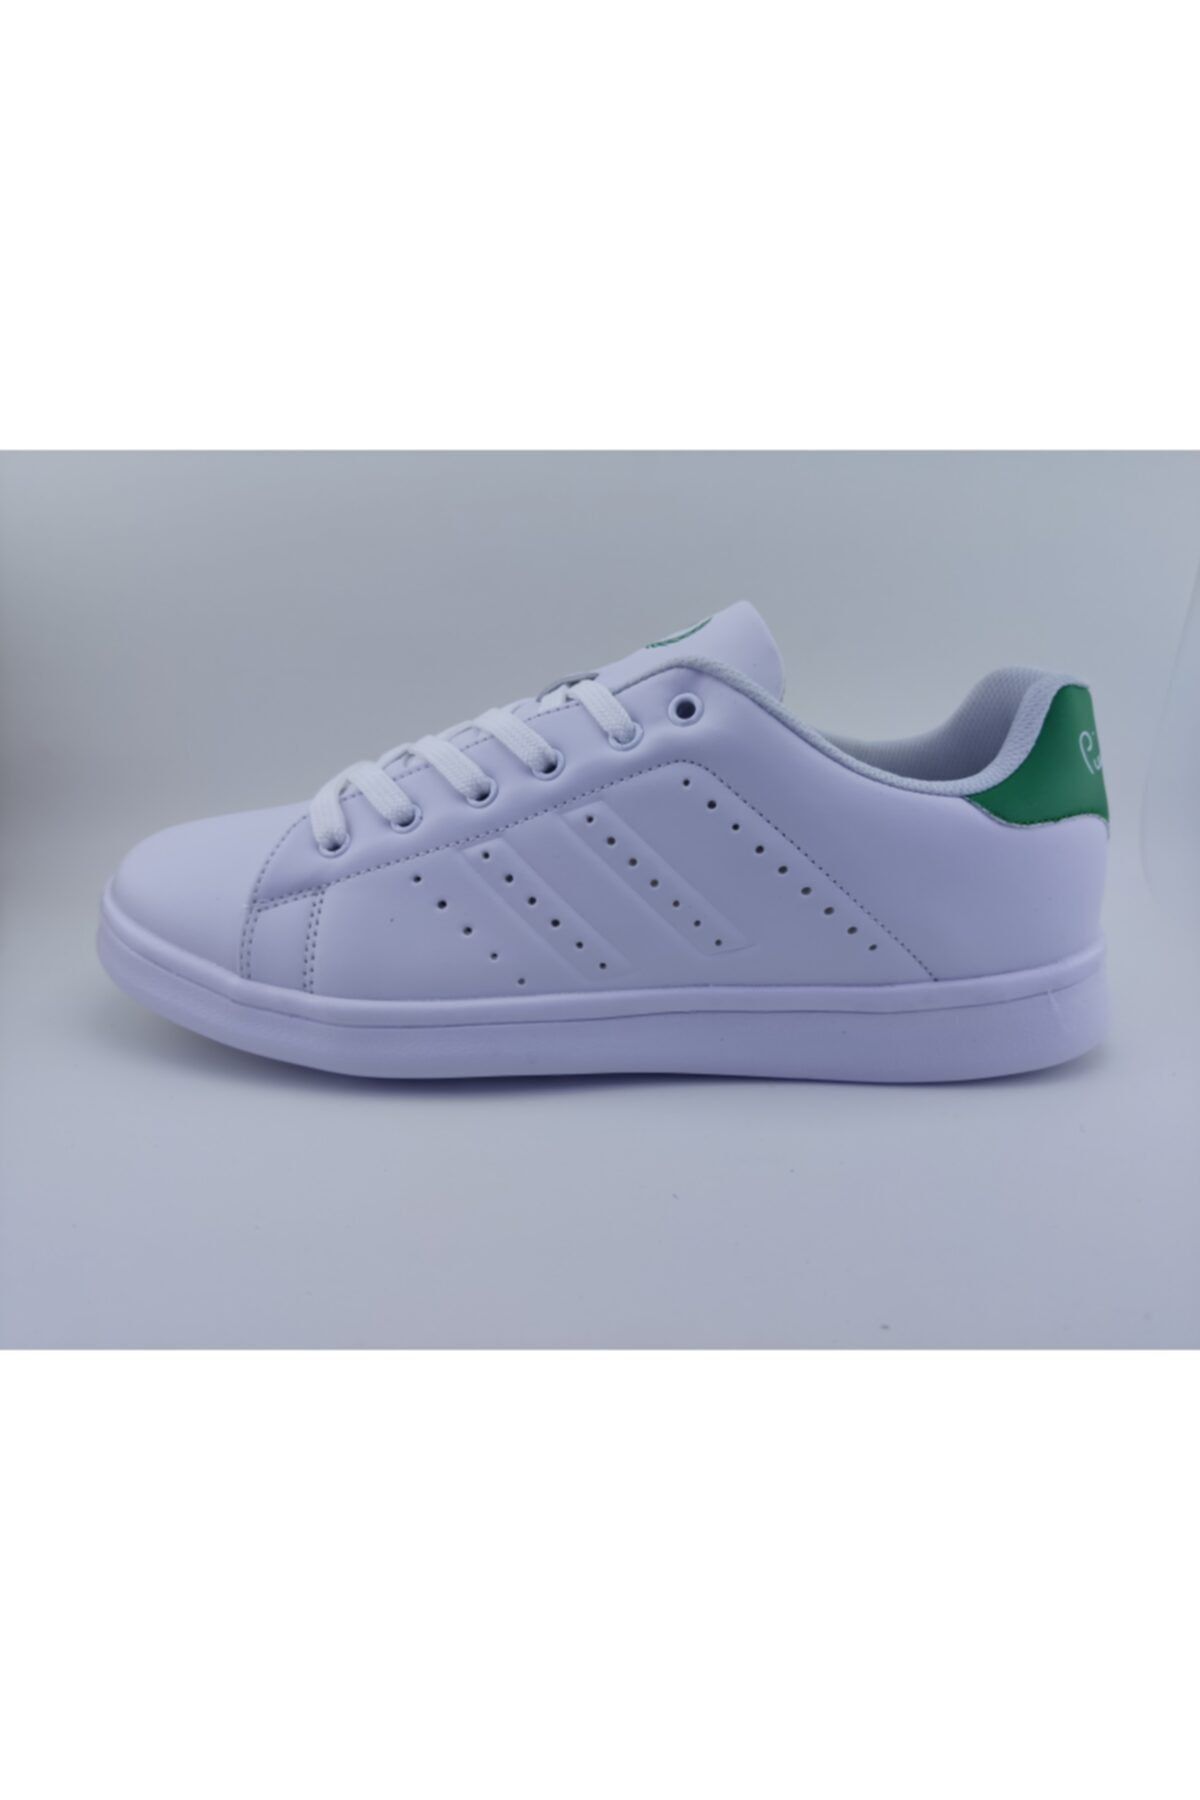 Pierre Cardin Erkek Deri Spor Ayakkabı Beyaz Yeşil 10152